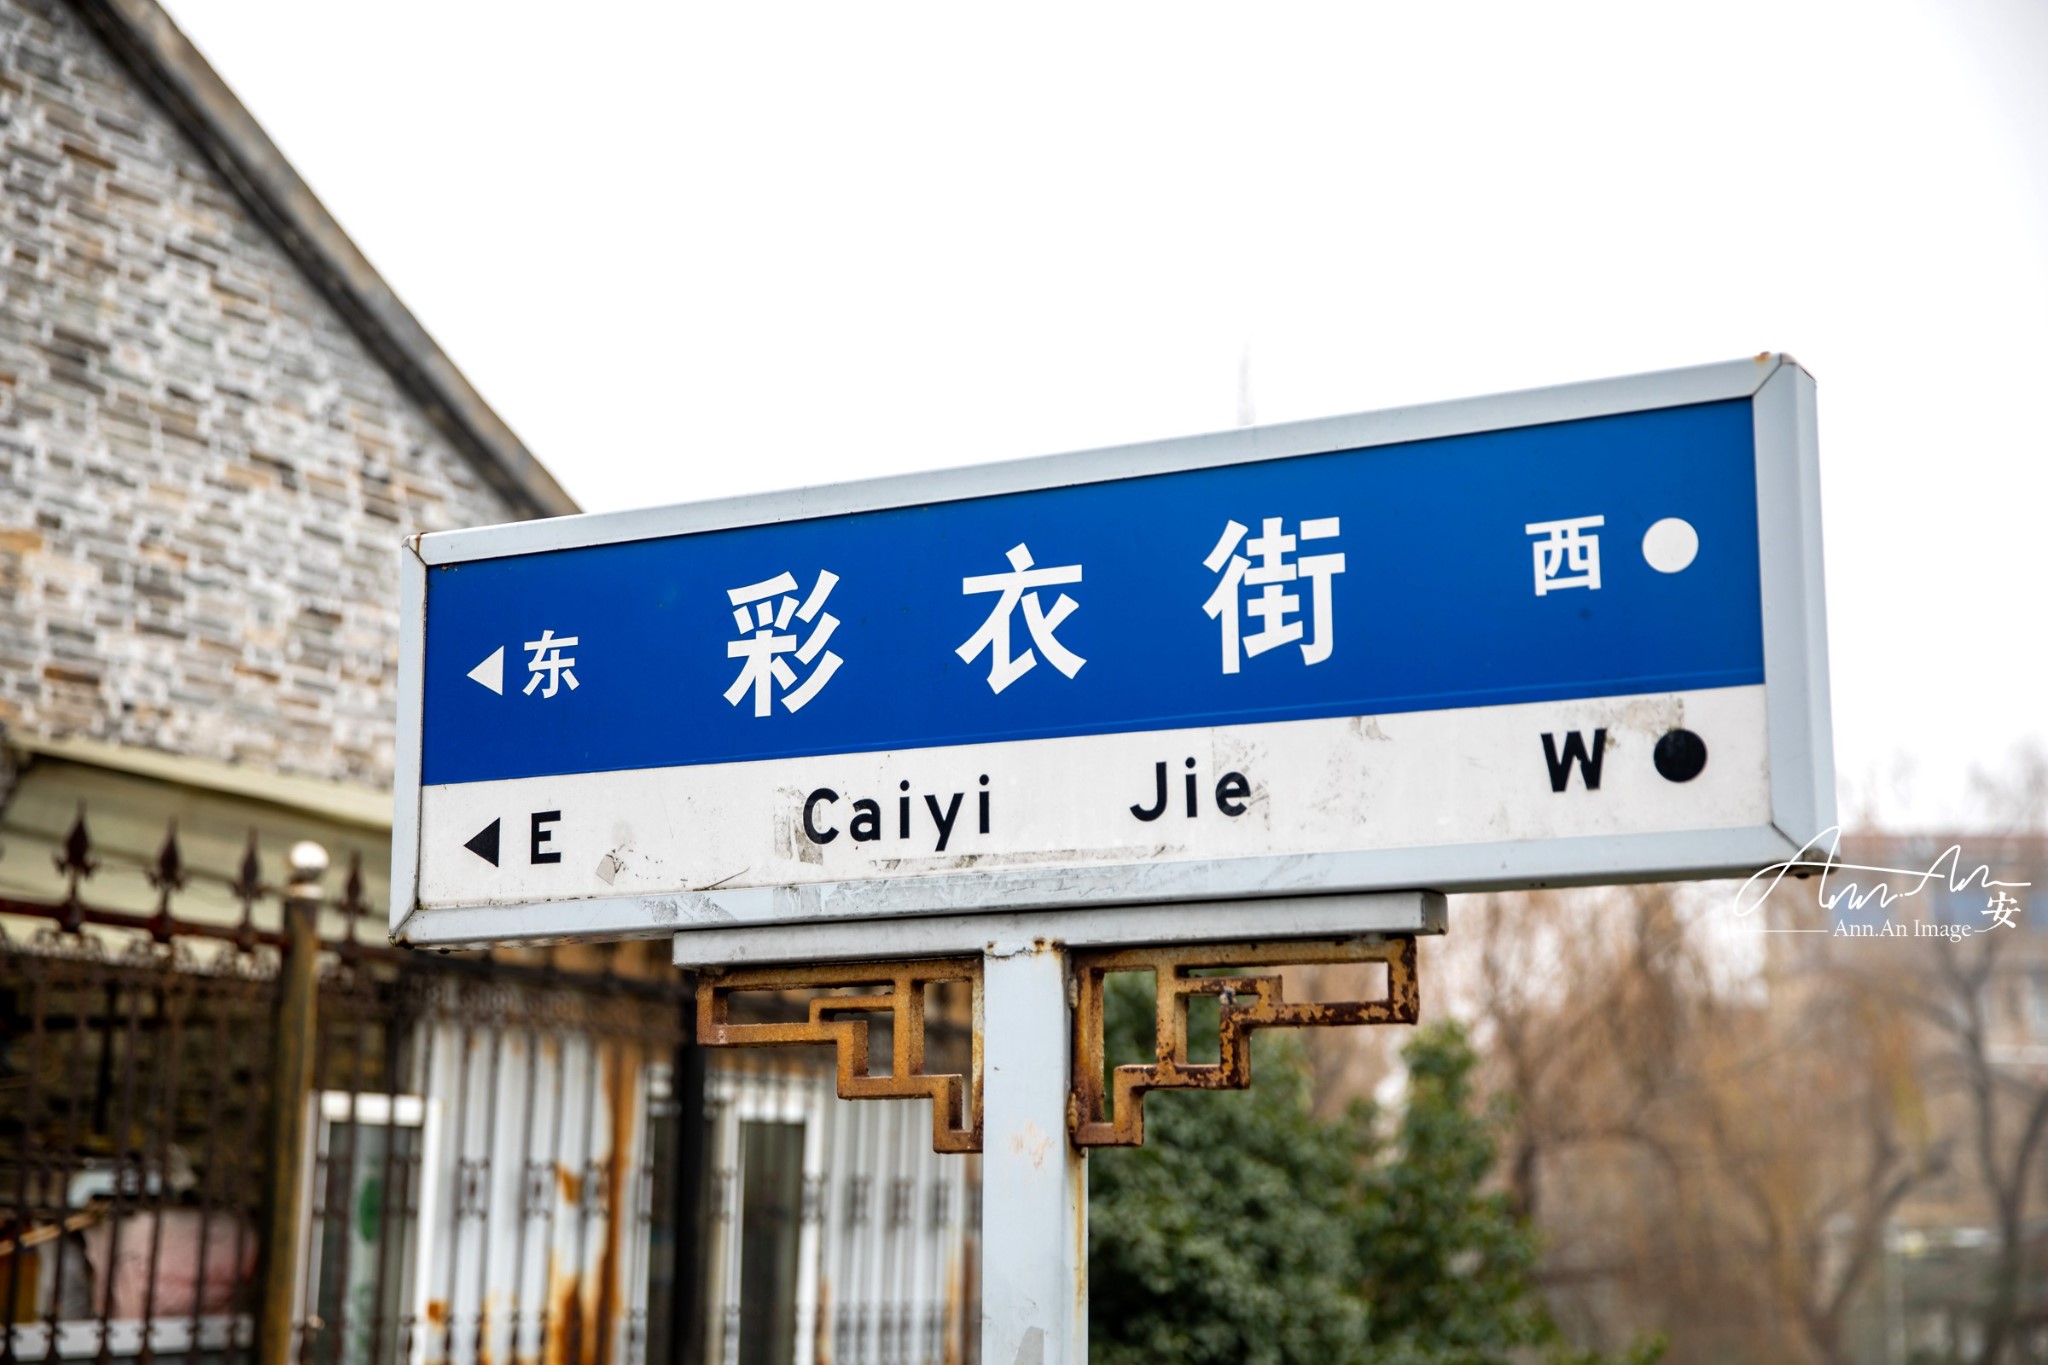 扬州彩衣街图片图片